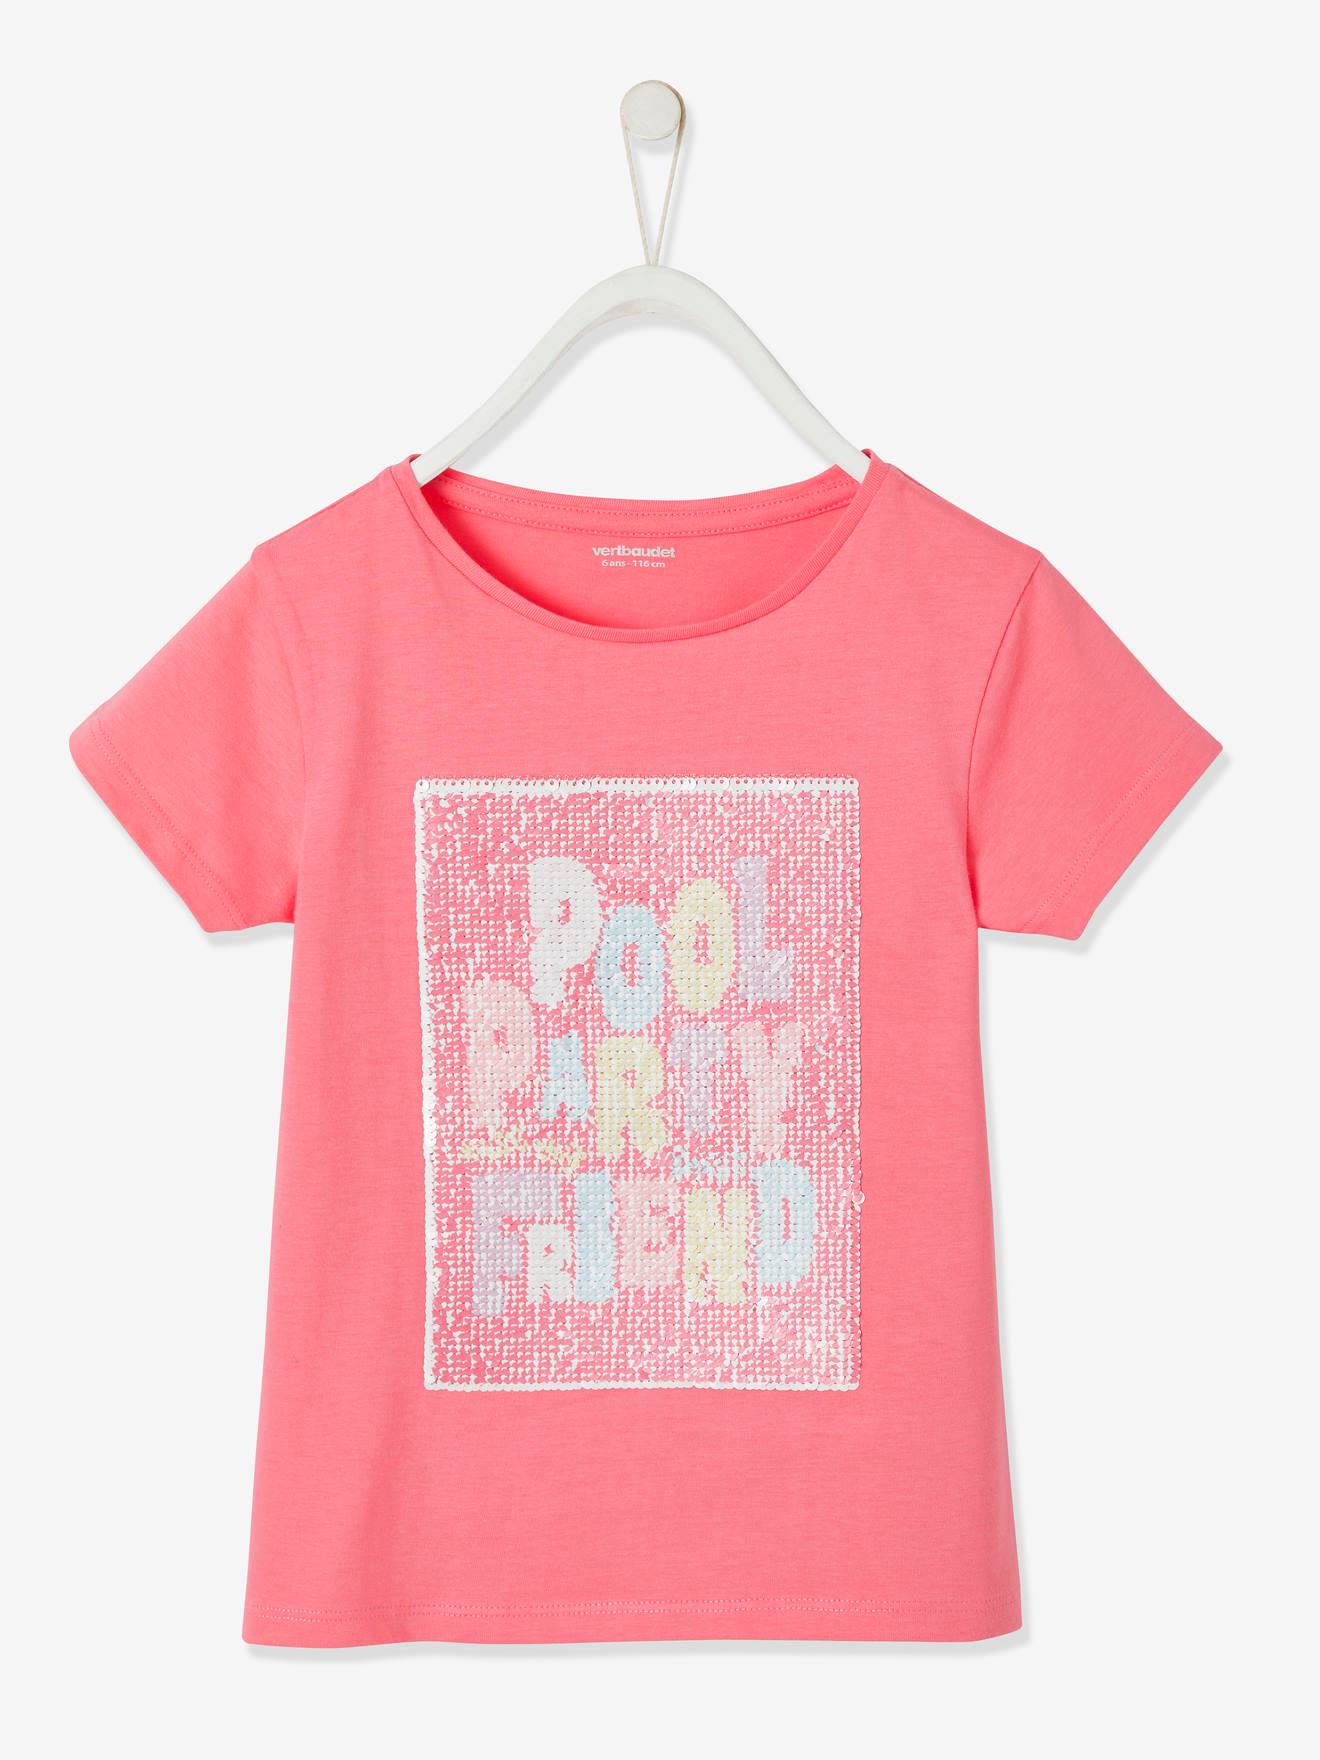 T-shirt pool party en sequins réversibles fille rose